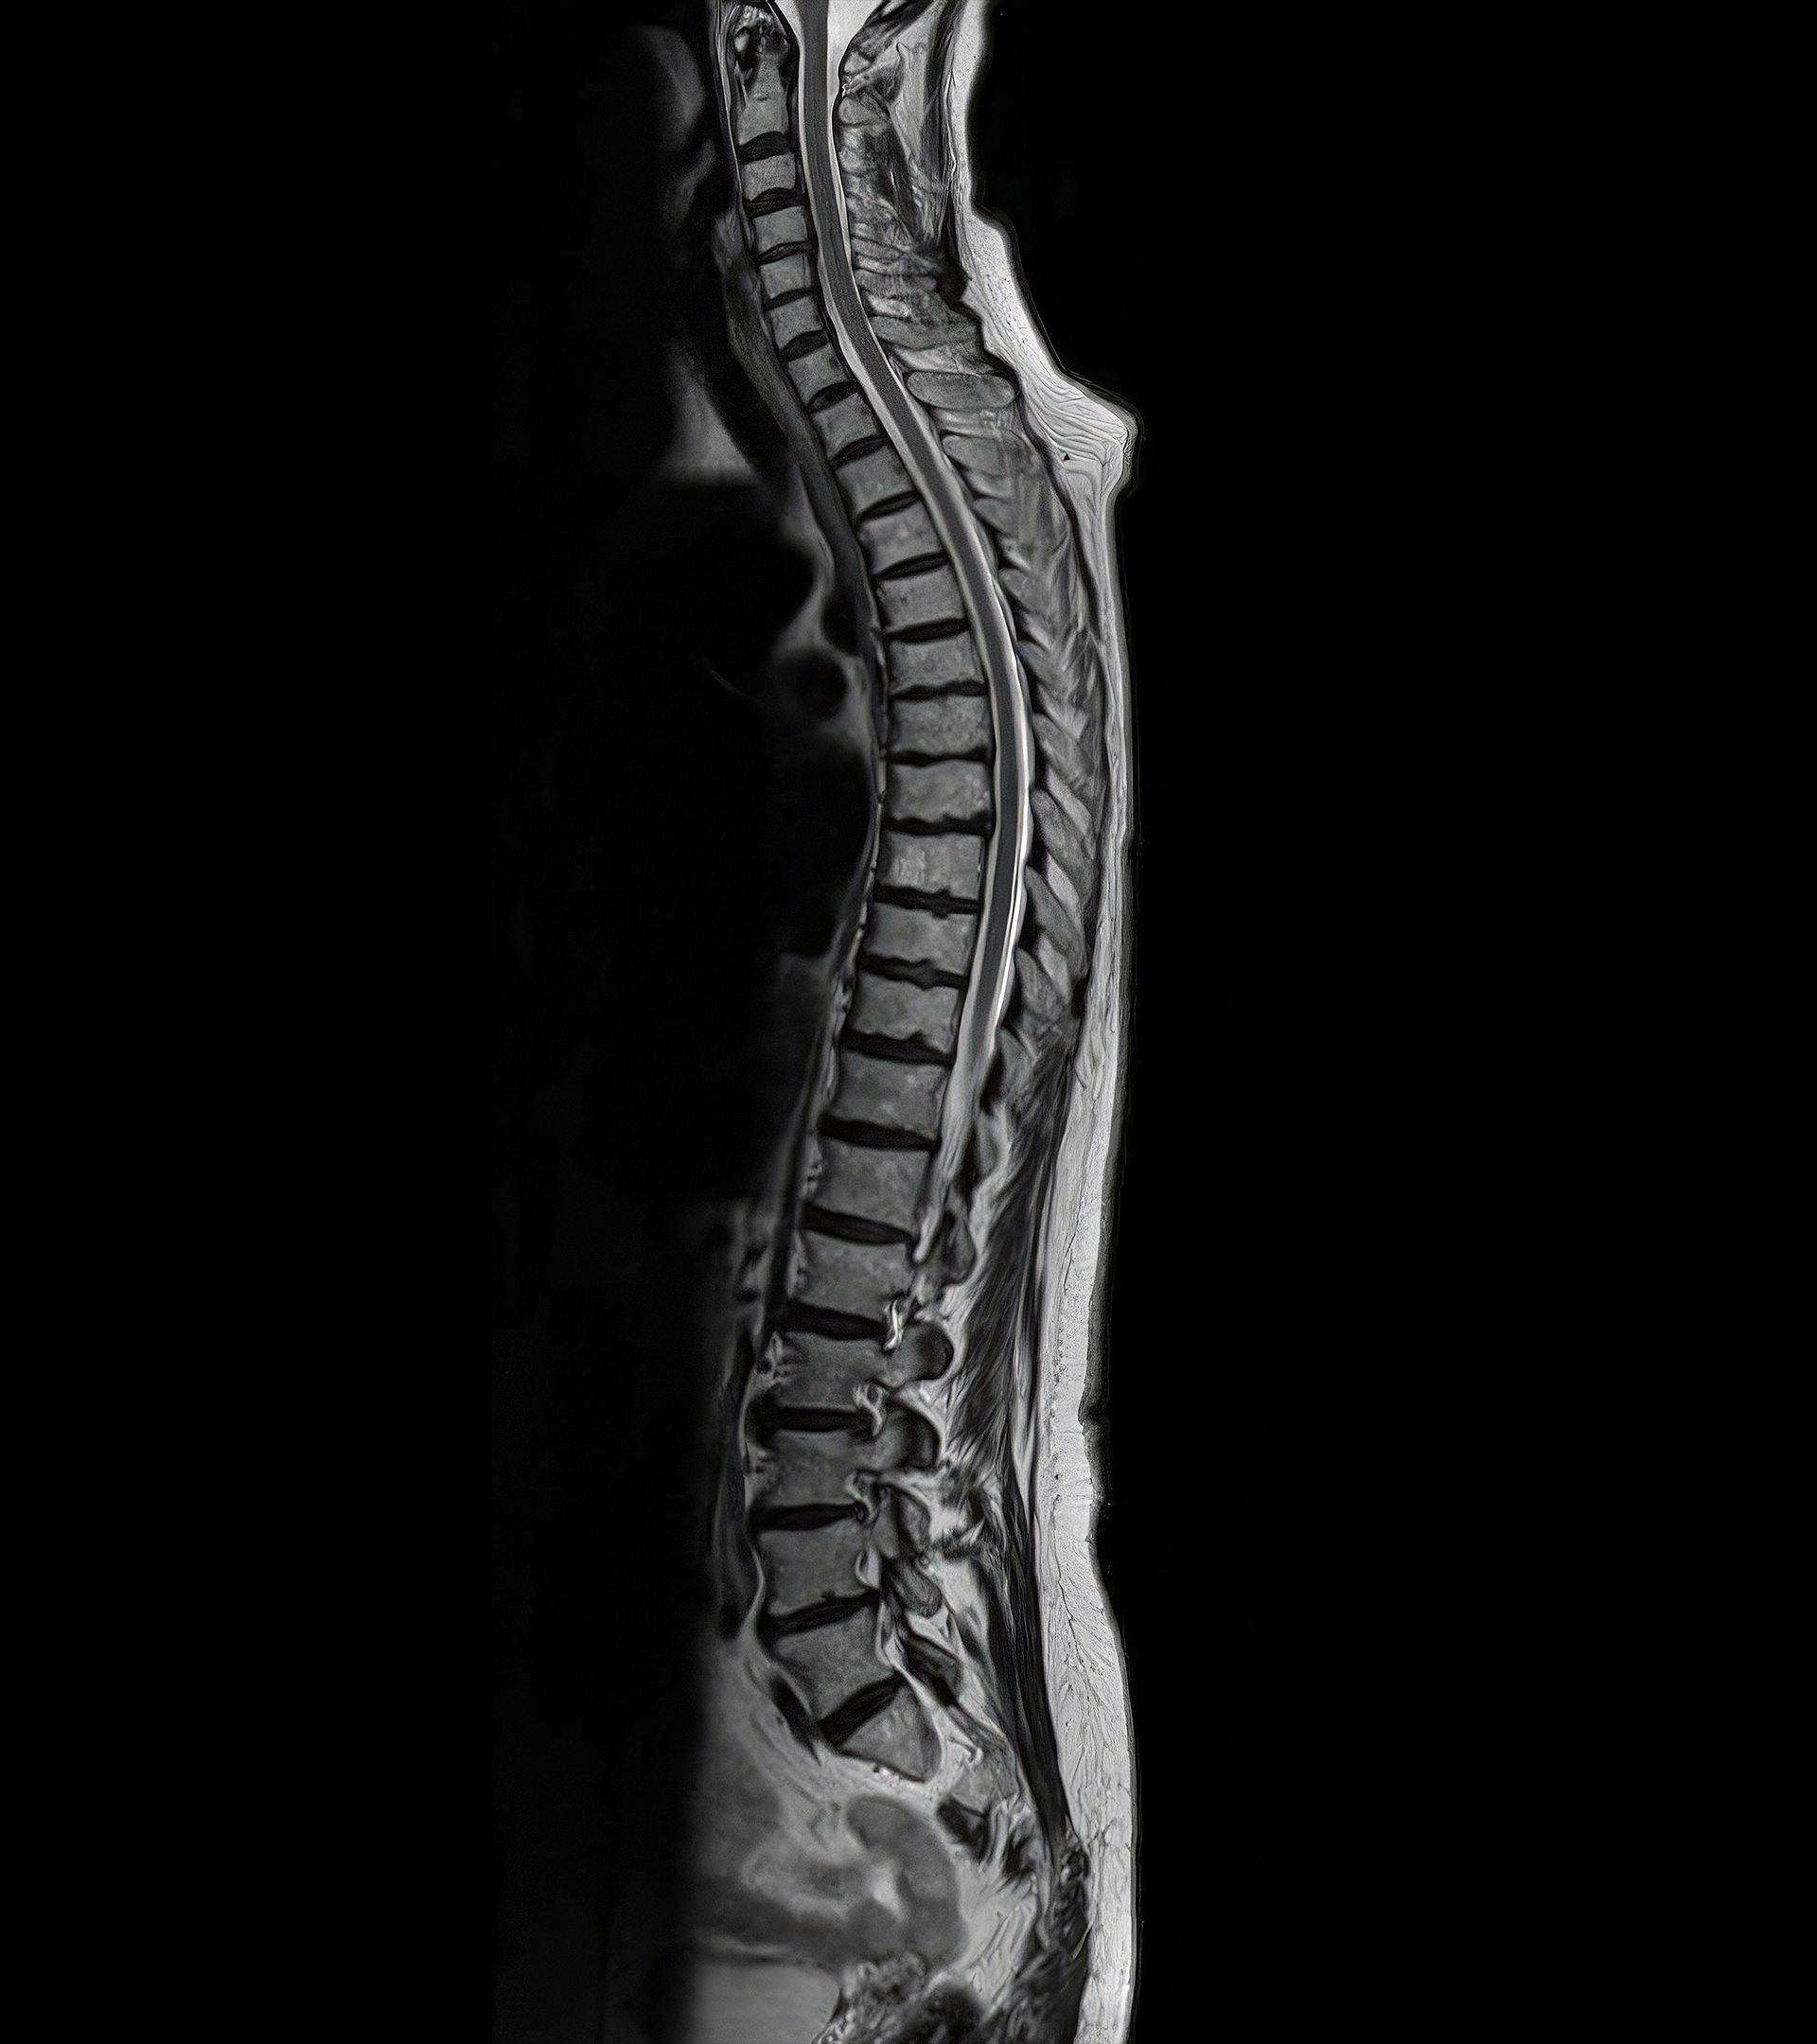 Corte sagital de la espina dorsal completa, obtenida solo en un minuto y 22 segundos.